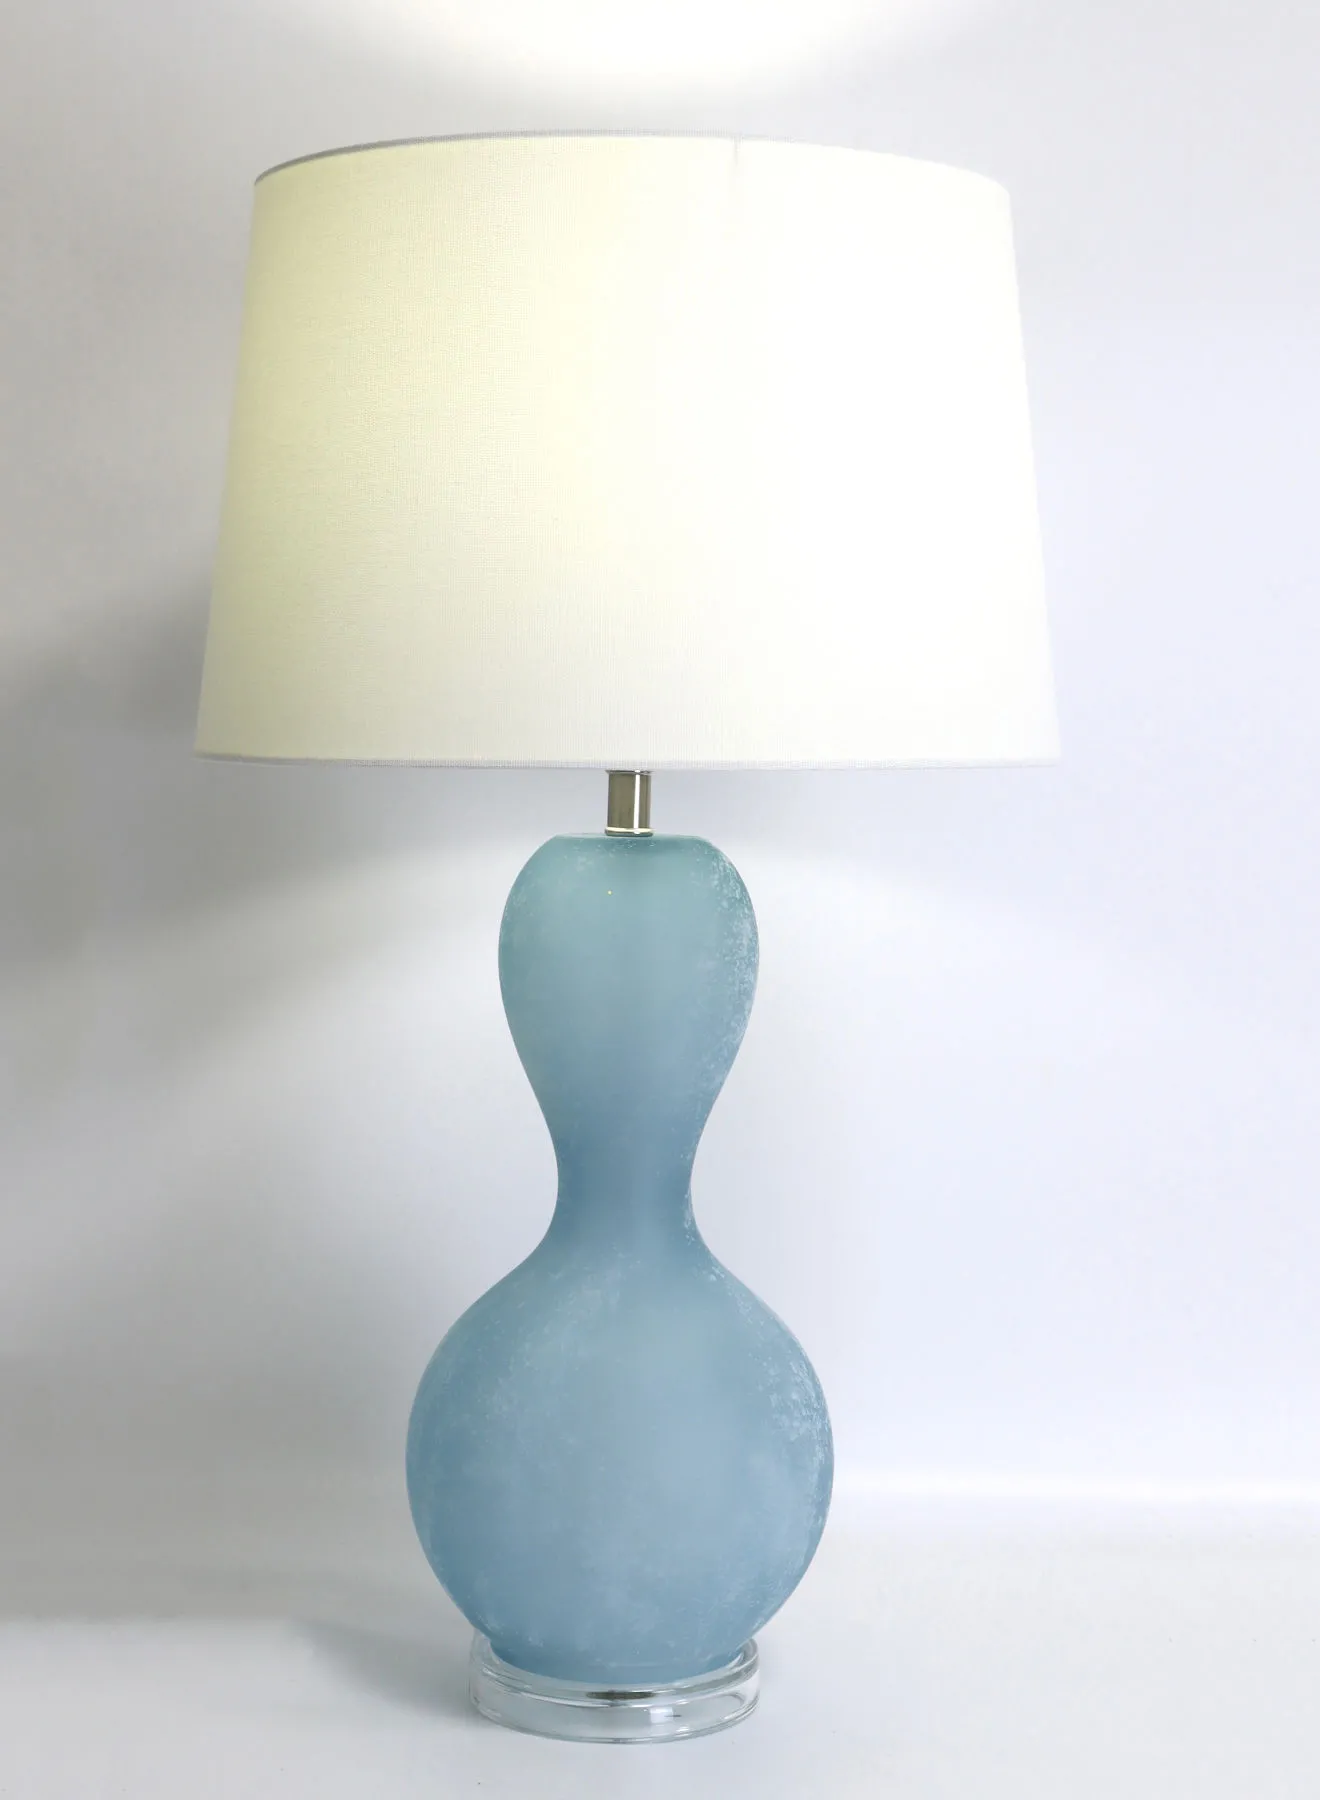 مصباح طاولة زجاجي بتصميم حديث من التبديل ، مادة فريدة من نوعها ذات جودة فاخرة لمنزل أنيق مثالي RSN71025 أزرق 15 × 26 أزرق 15 × 26 بوصة